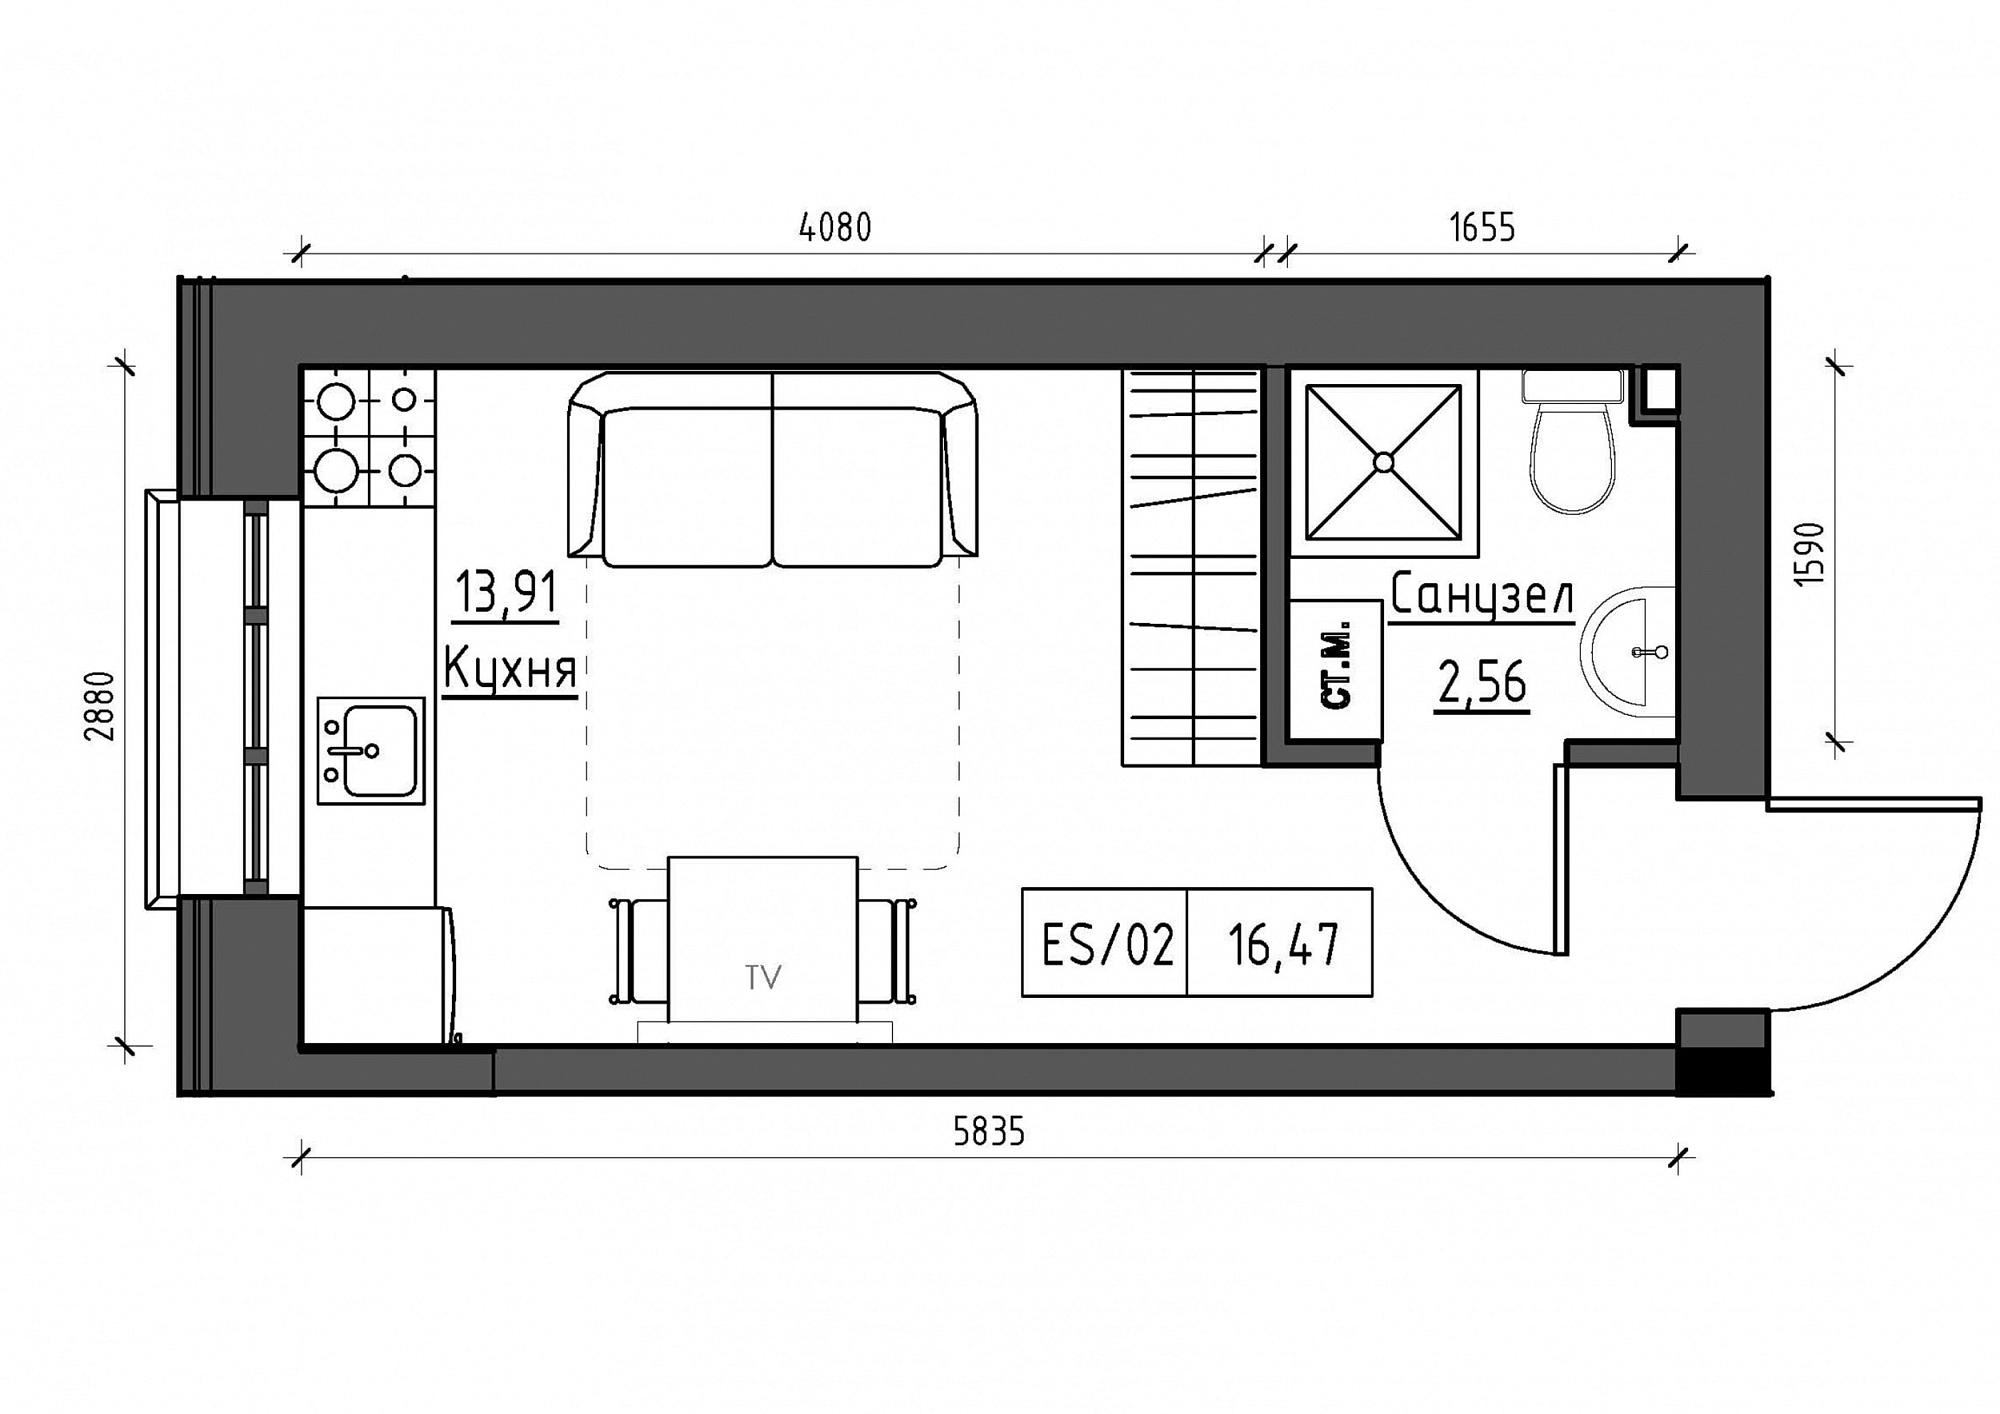 Планування Smart-квартира площею 16.47м2, KS-012-04/0011.